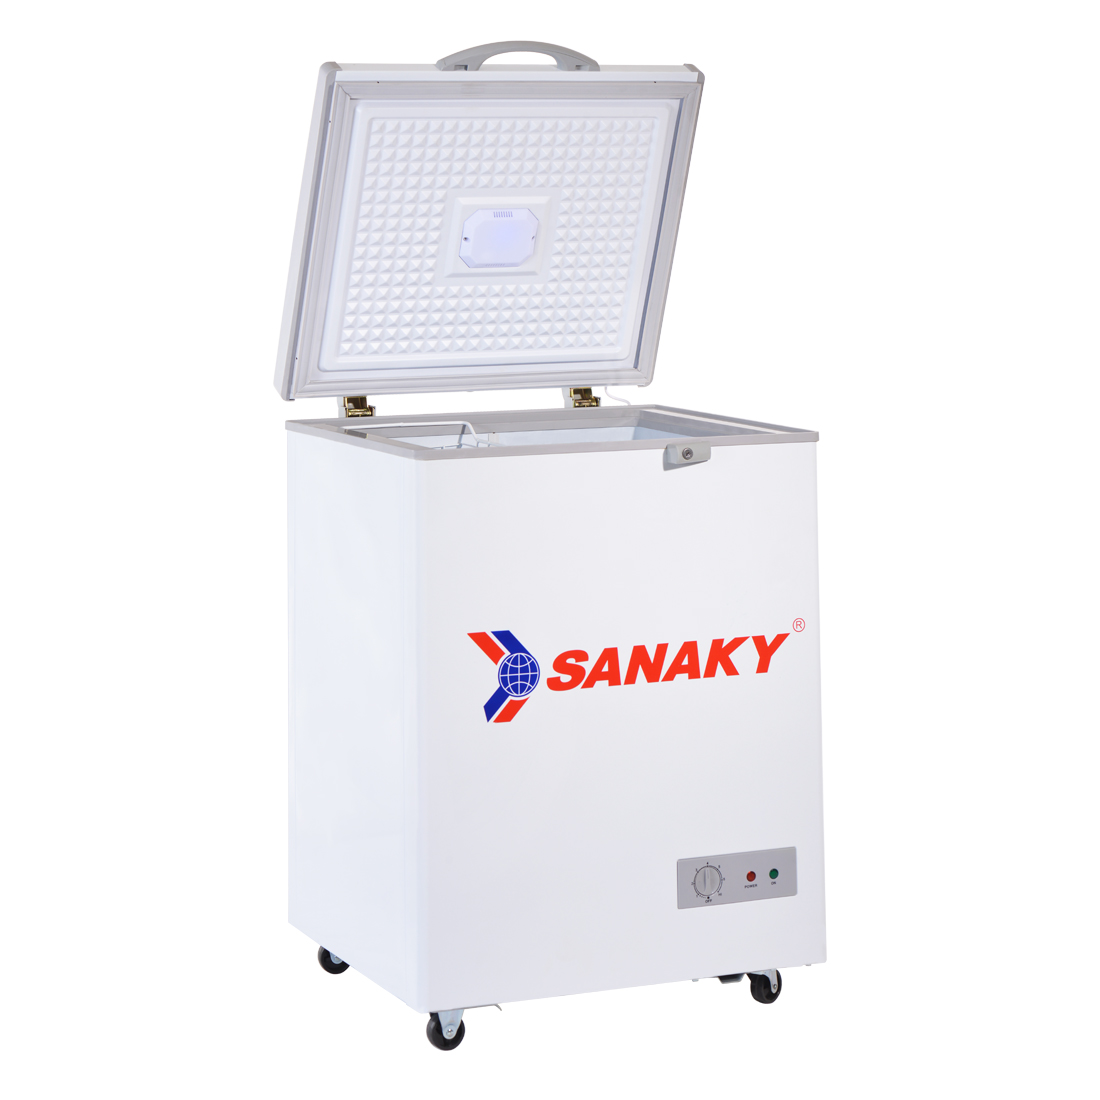 Tủ Đông Sanaky VH-150HY2 (100L) - Hàng Chính Hãng